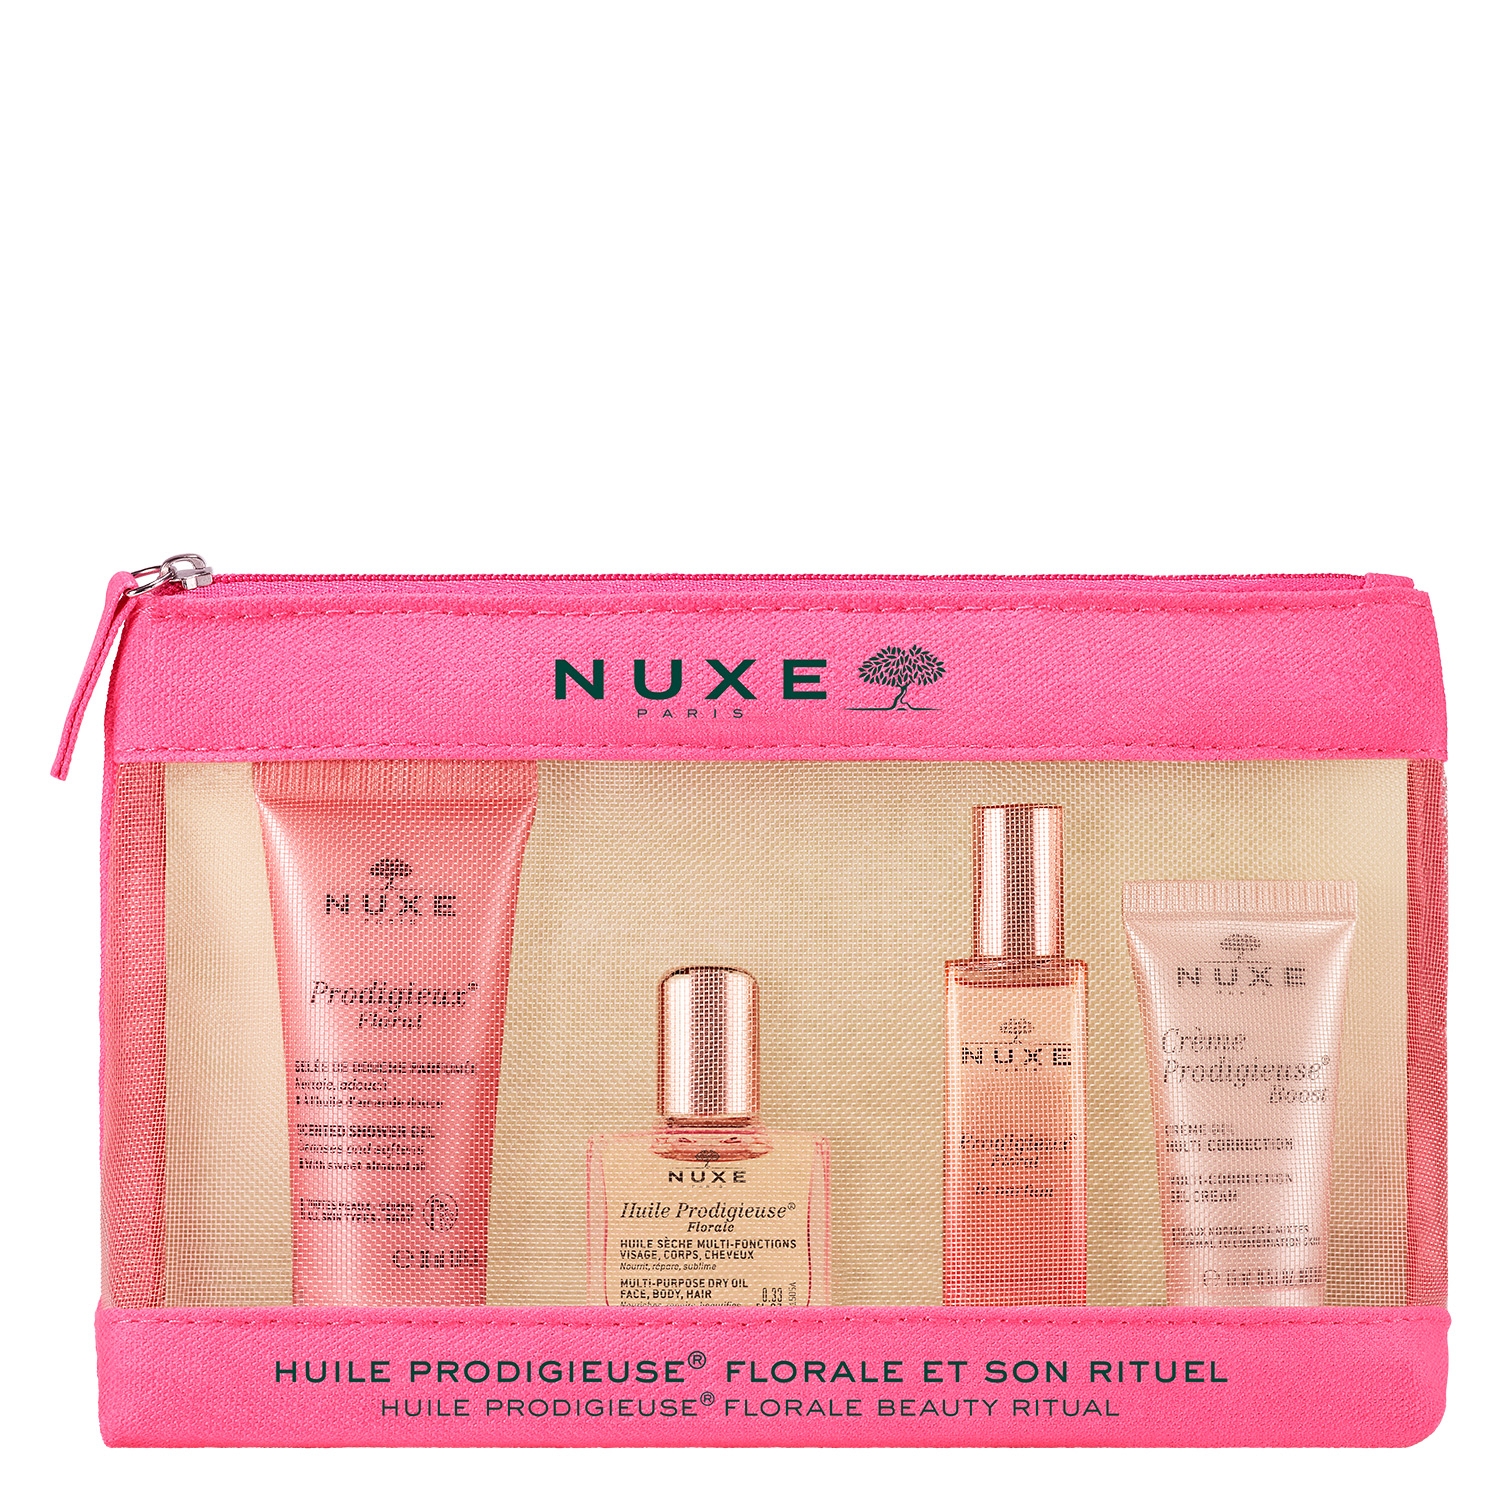 Product image from Nuxe Specials - Rituel de Beauté Prodigieux Floral Set